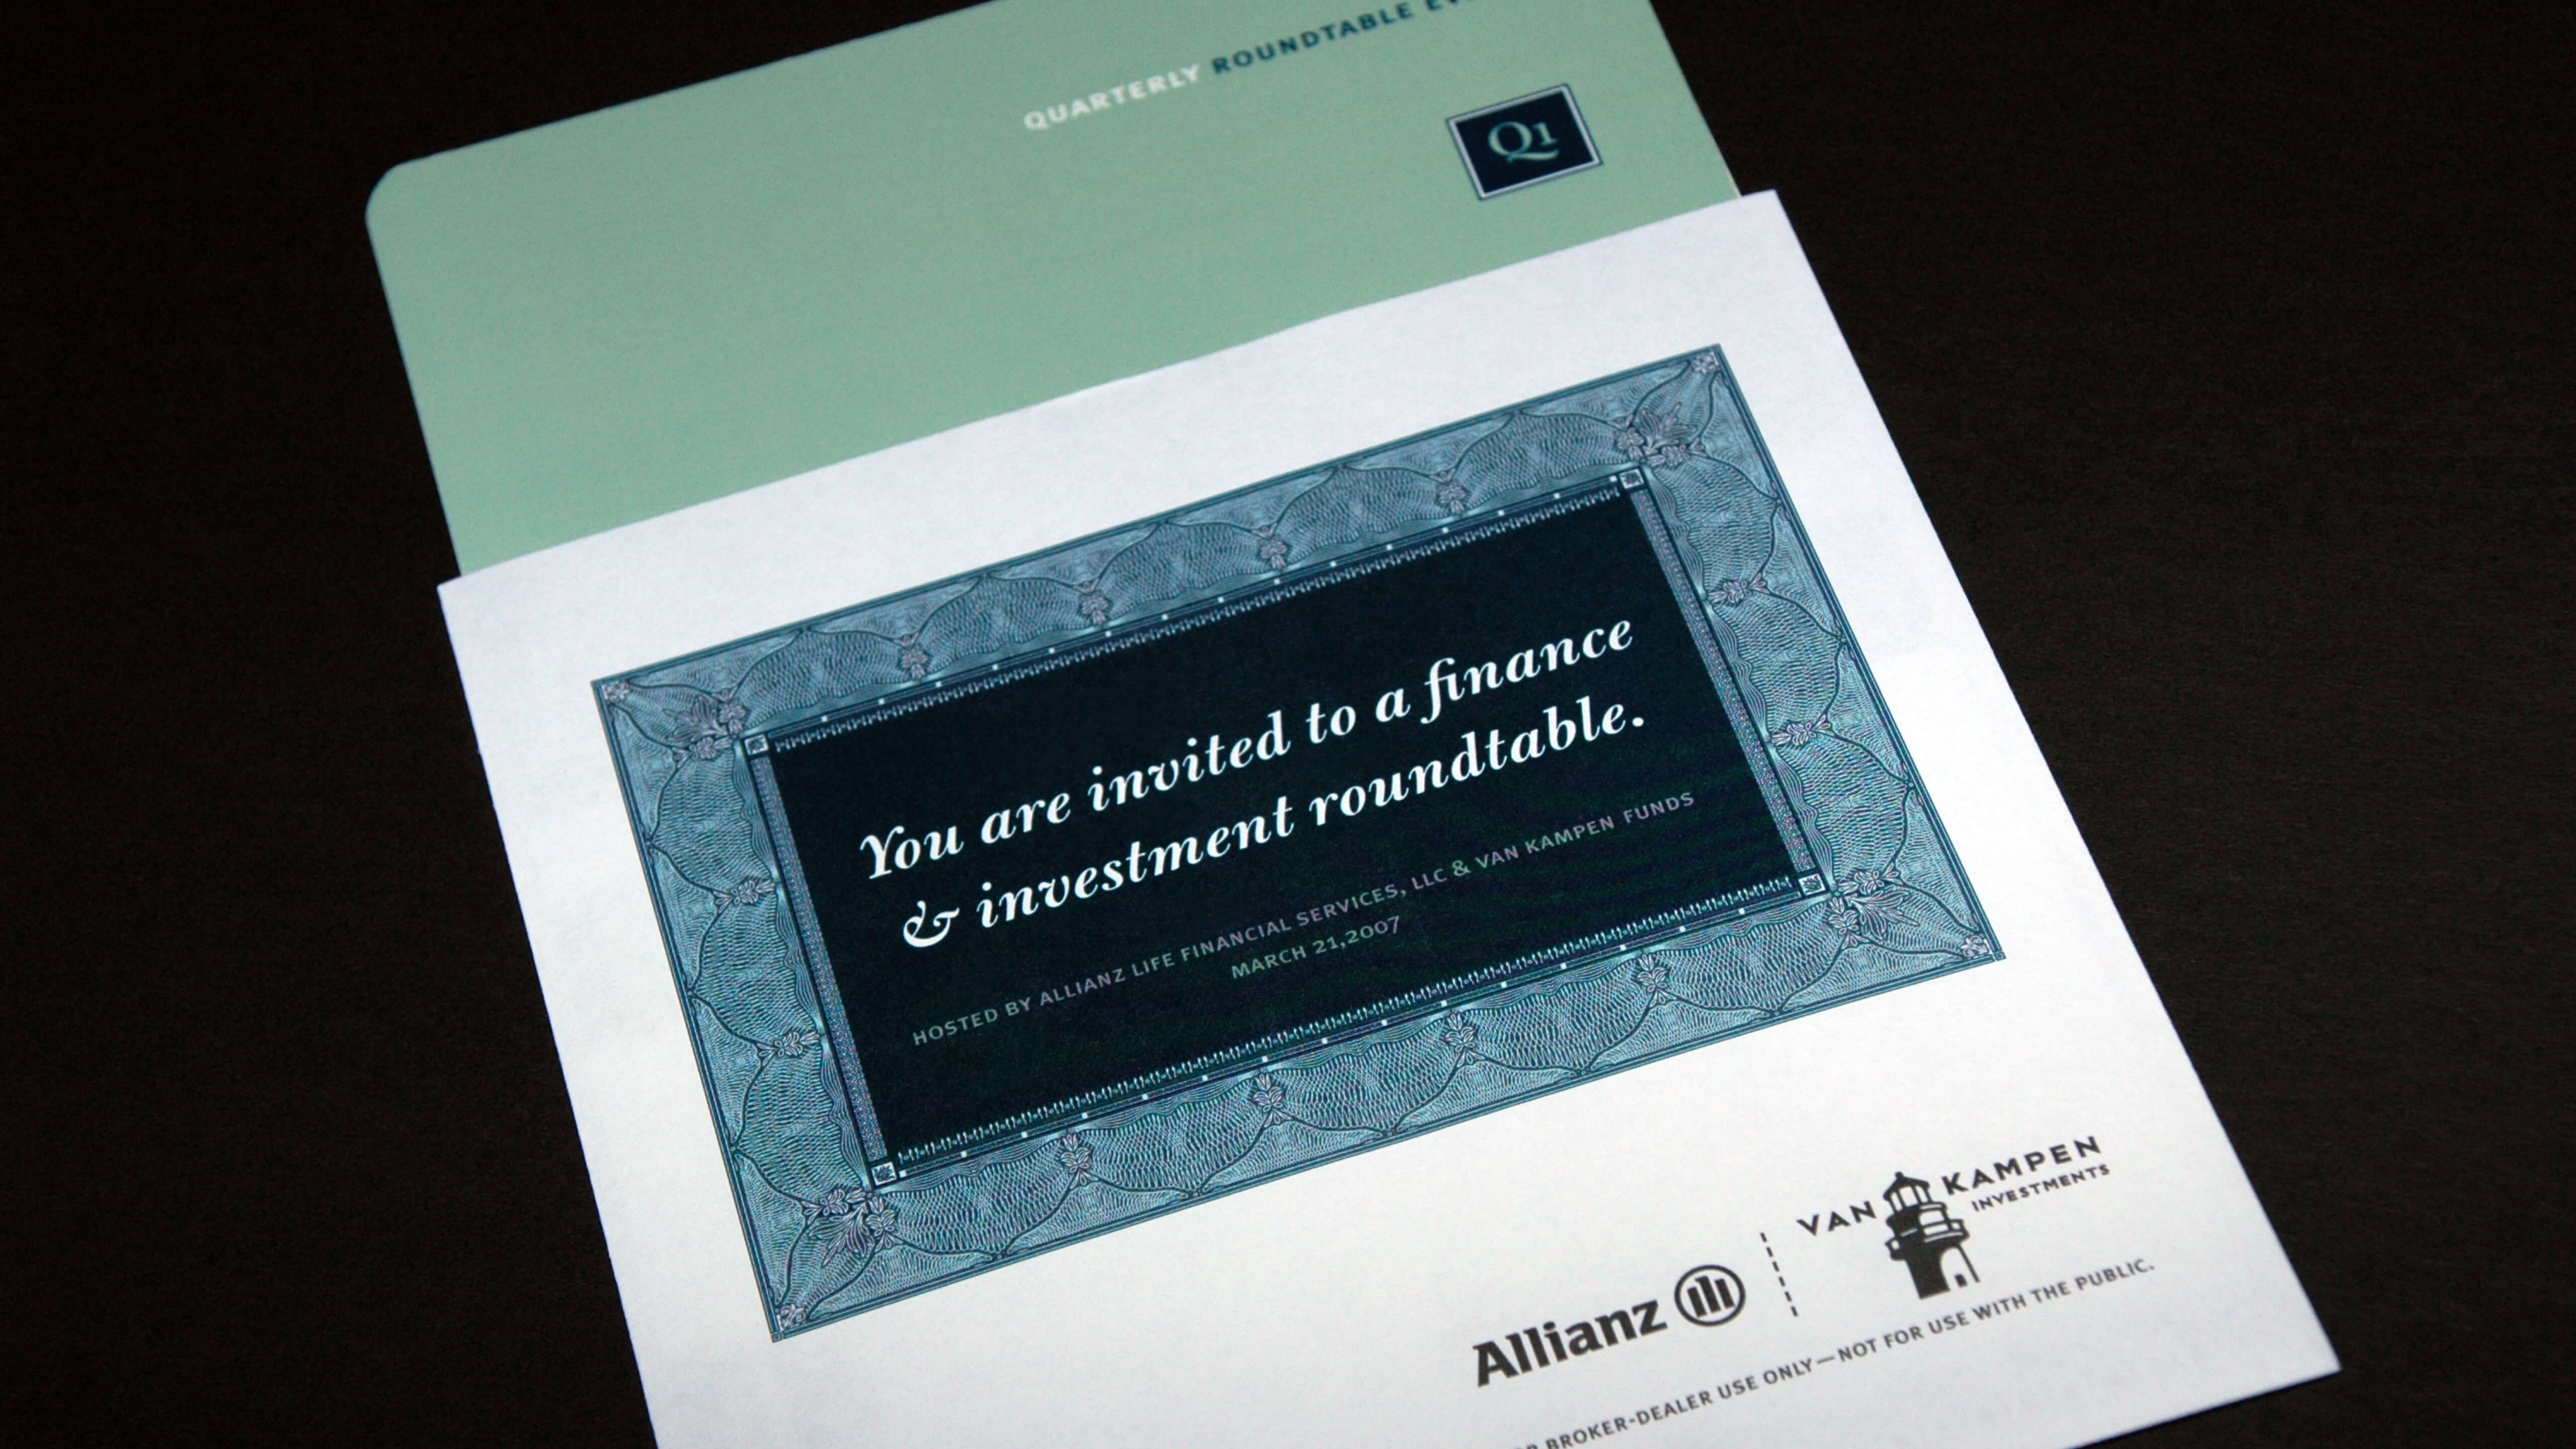 Allianz | Quarterly Round Table Invitation